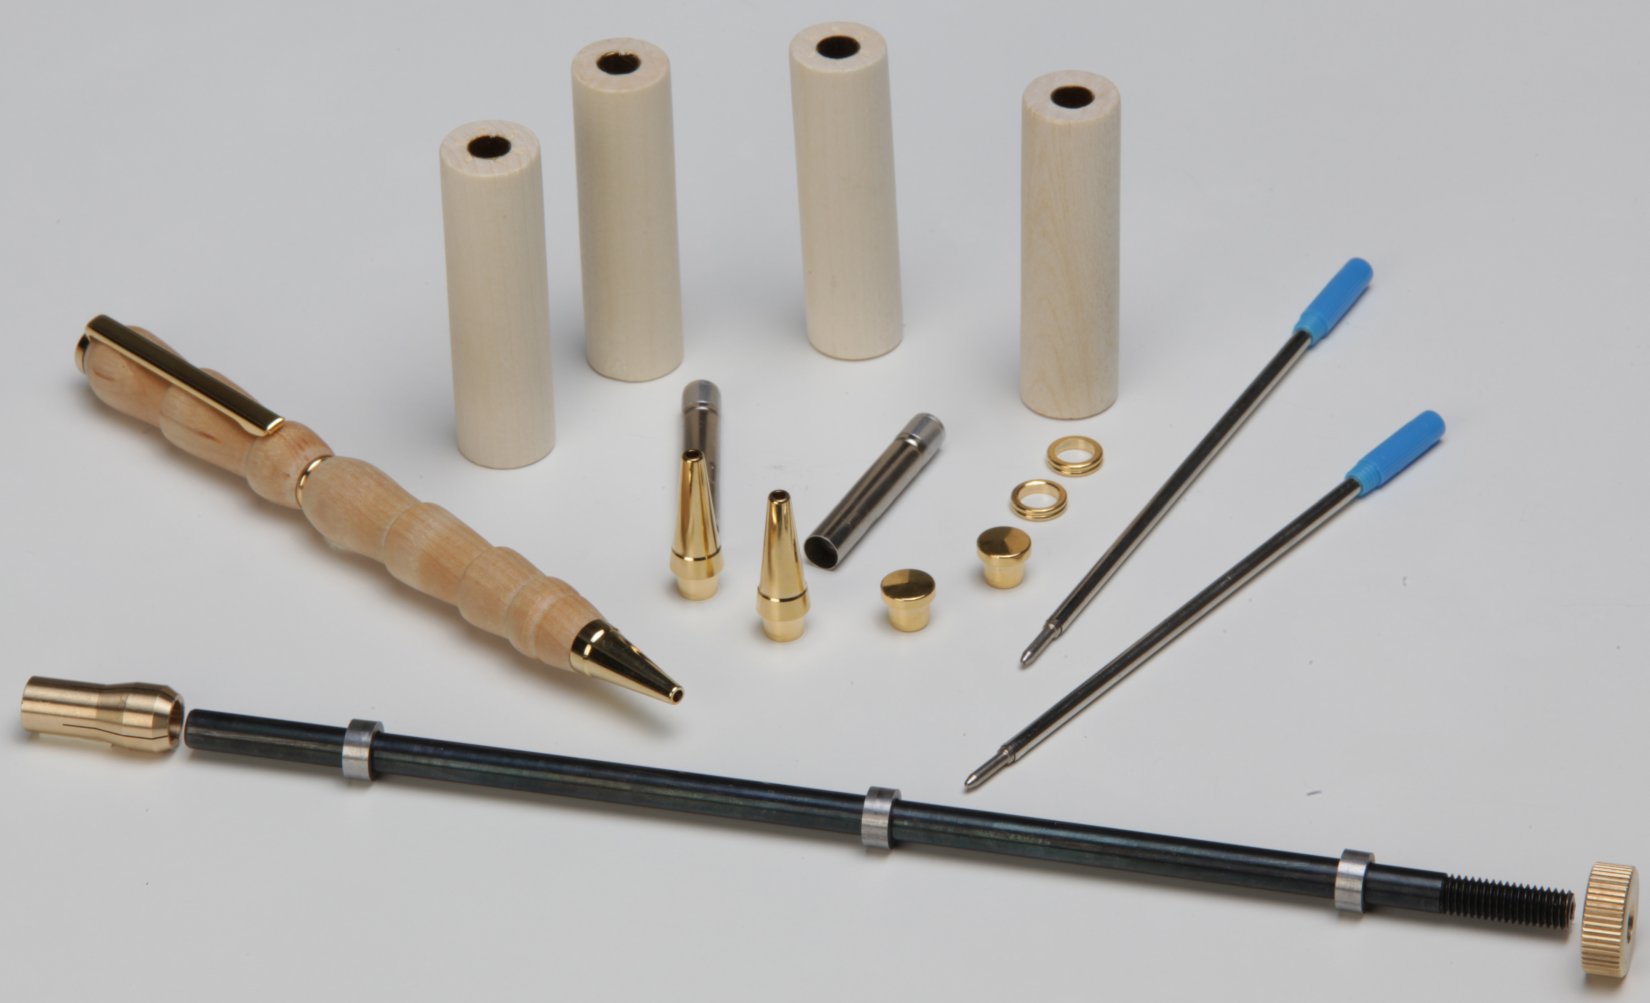 Basic equipment: Refill Kit for 3 Wooden Pens